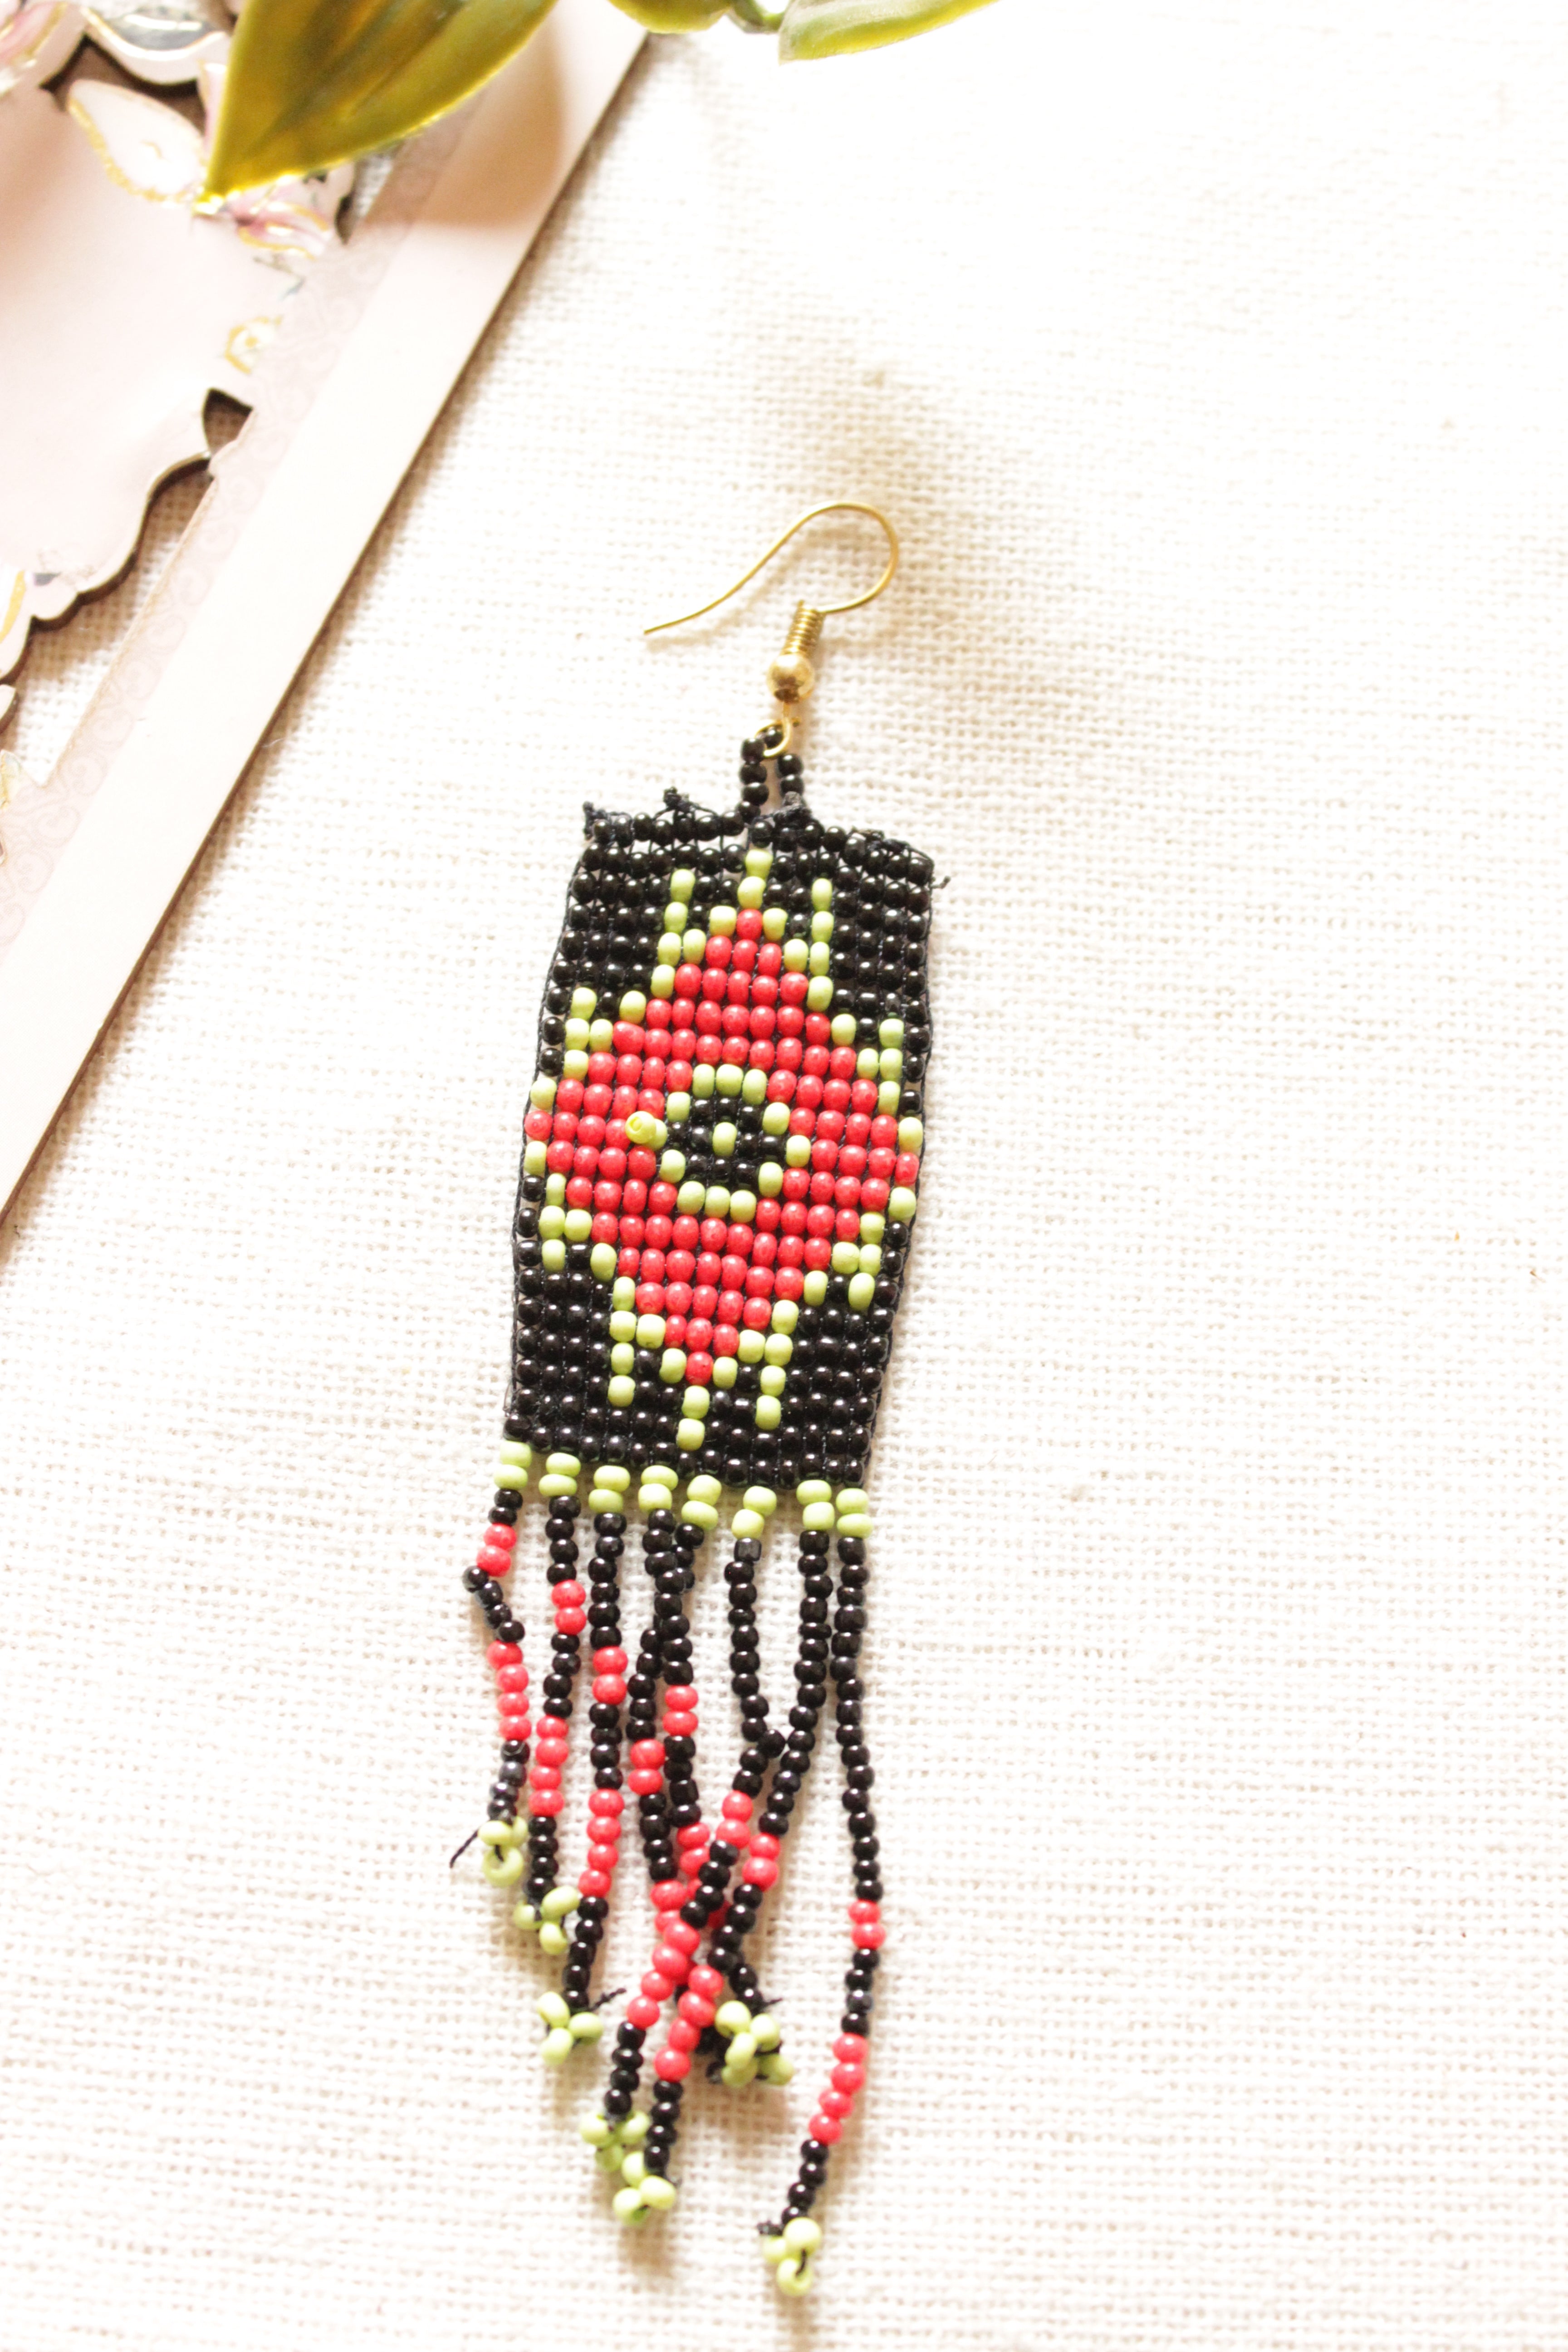 Black and Red Seed Beads Handmade Beaded Dangler Earrings